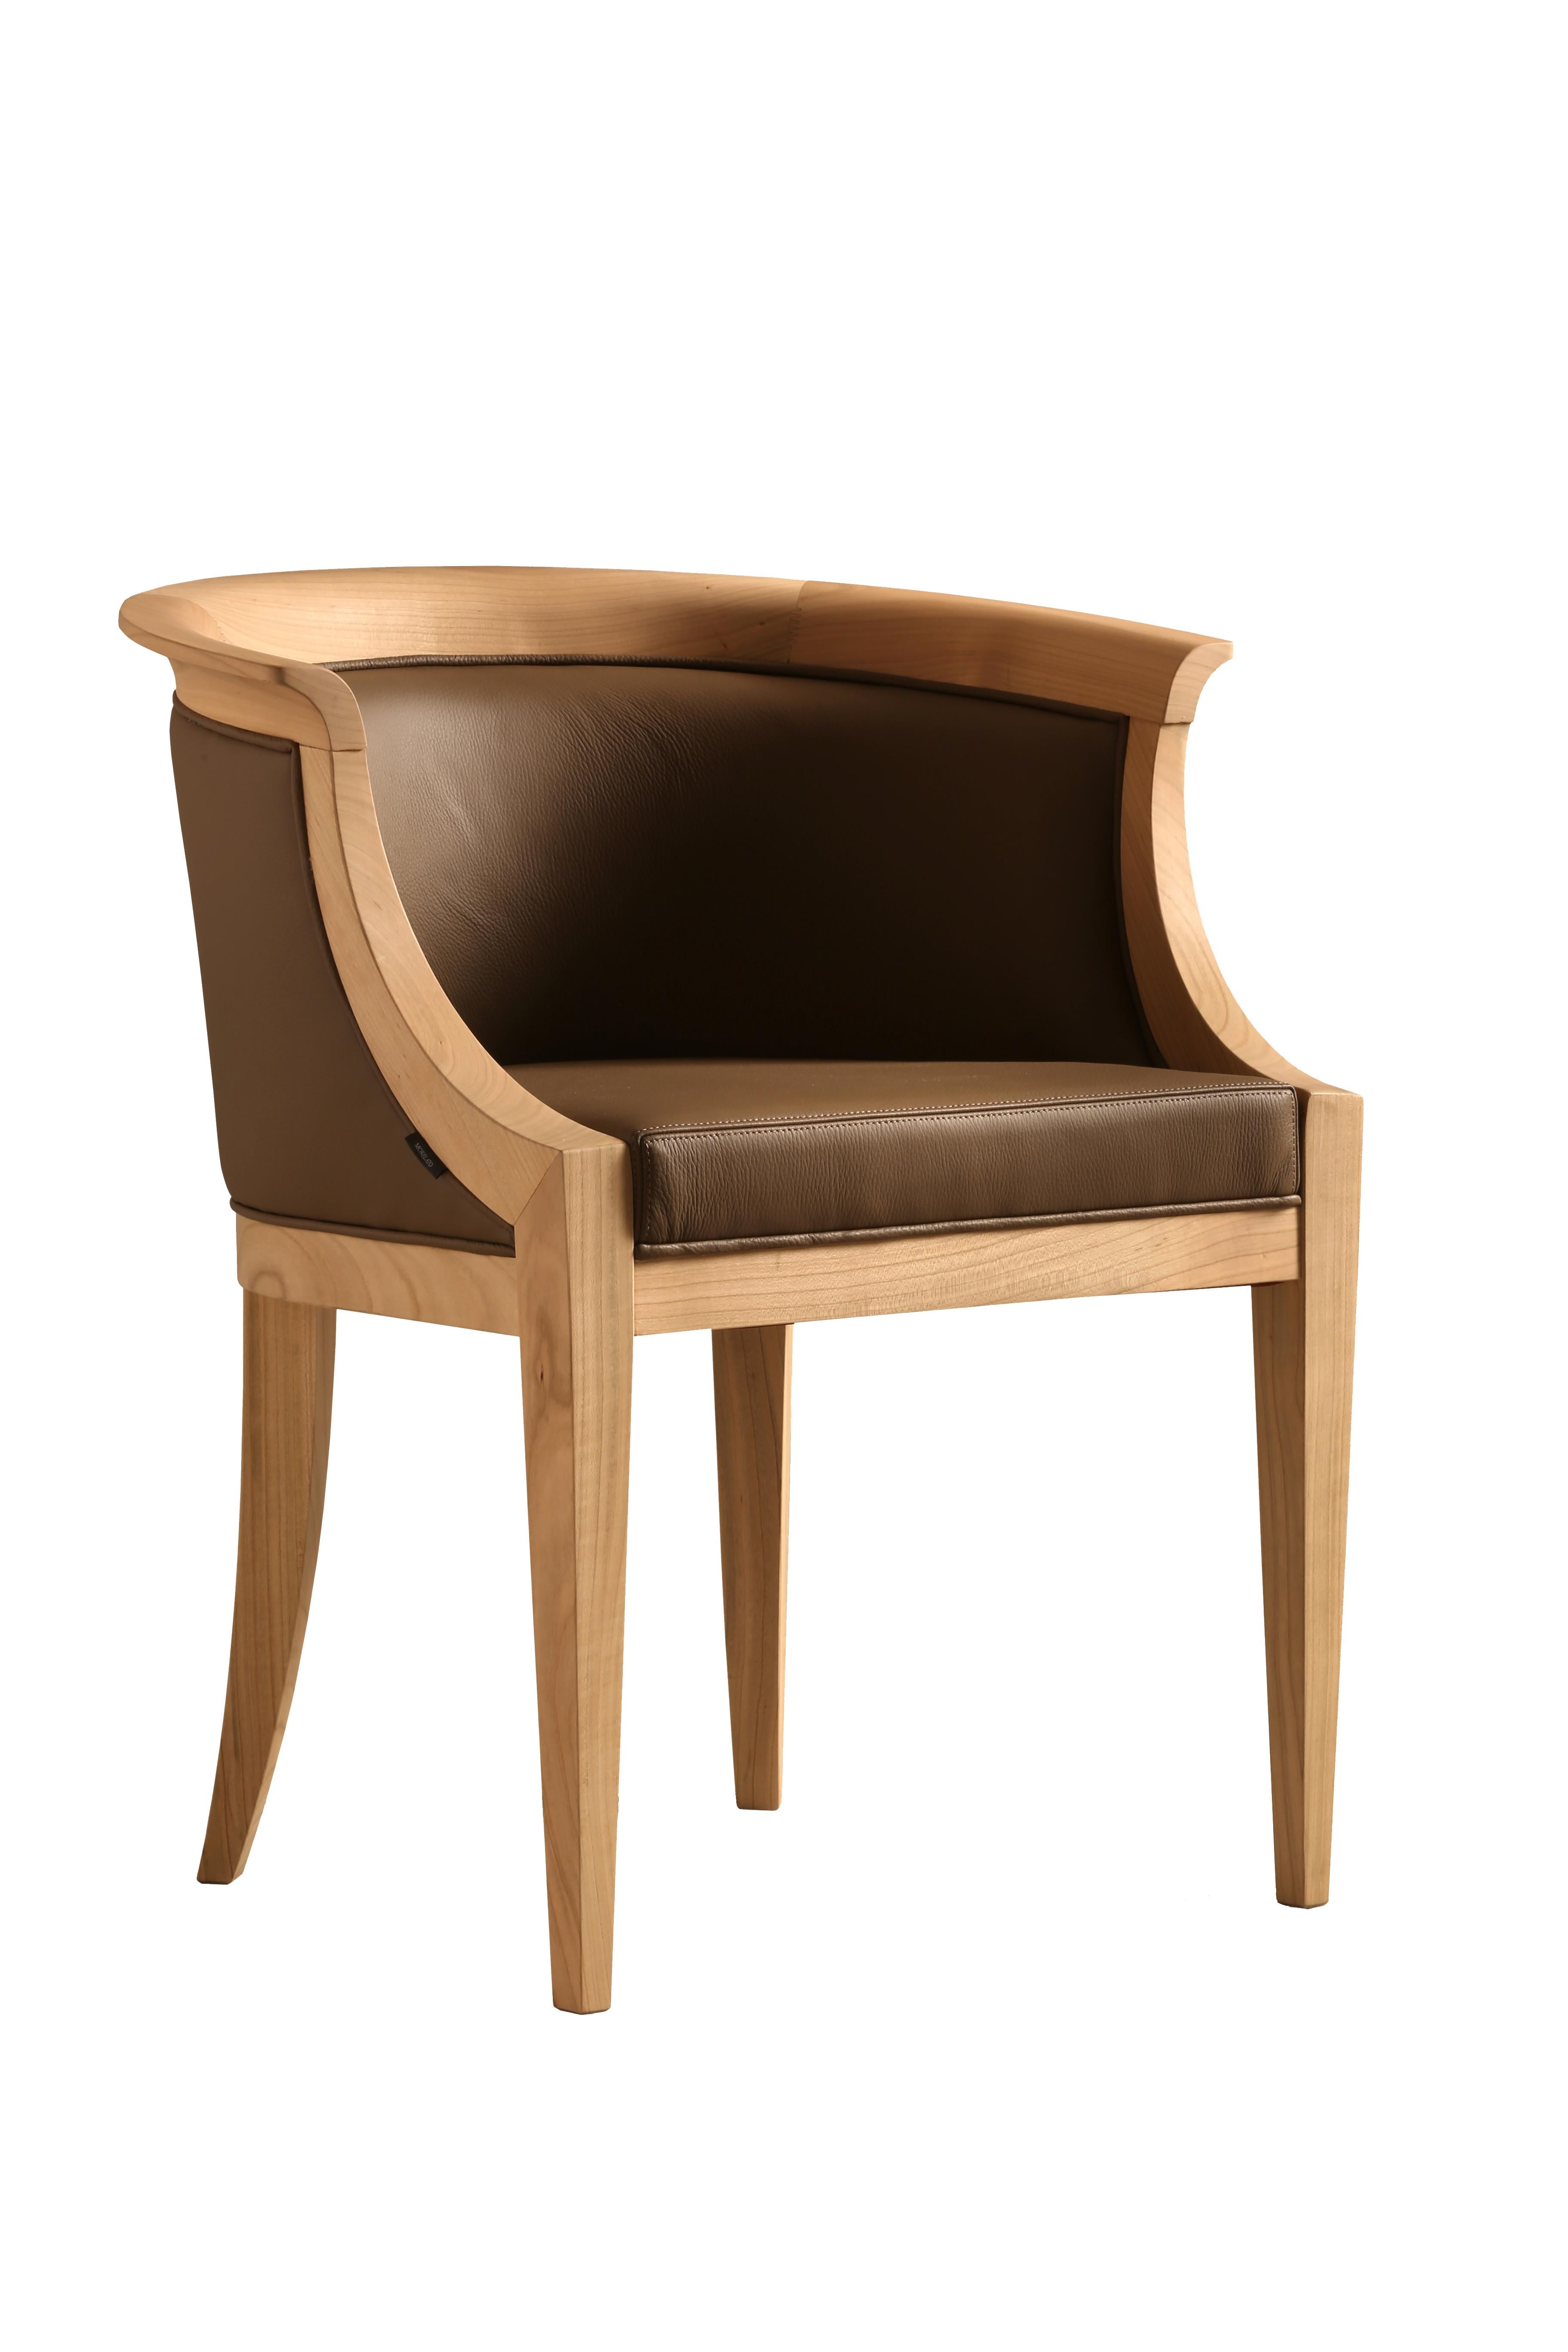 Gepolsterter Sessel im Biedermeier-Stil aus Kirschholz. 
Gepolstert mit Leder oder Stoff.
Anpassbar mit verschiedenen Holzoberflächen und Beschichtungsmaterialien/-farben
hergestellt in Italien von Morelato

  